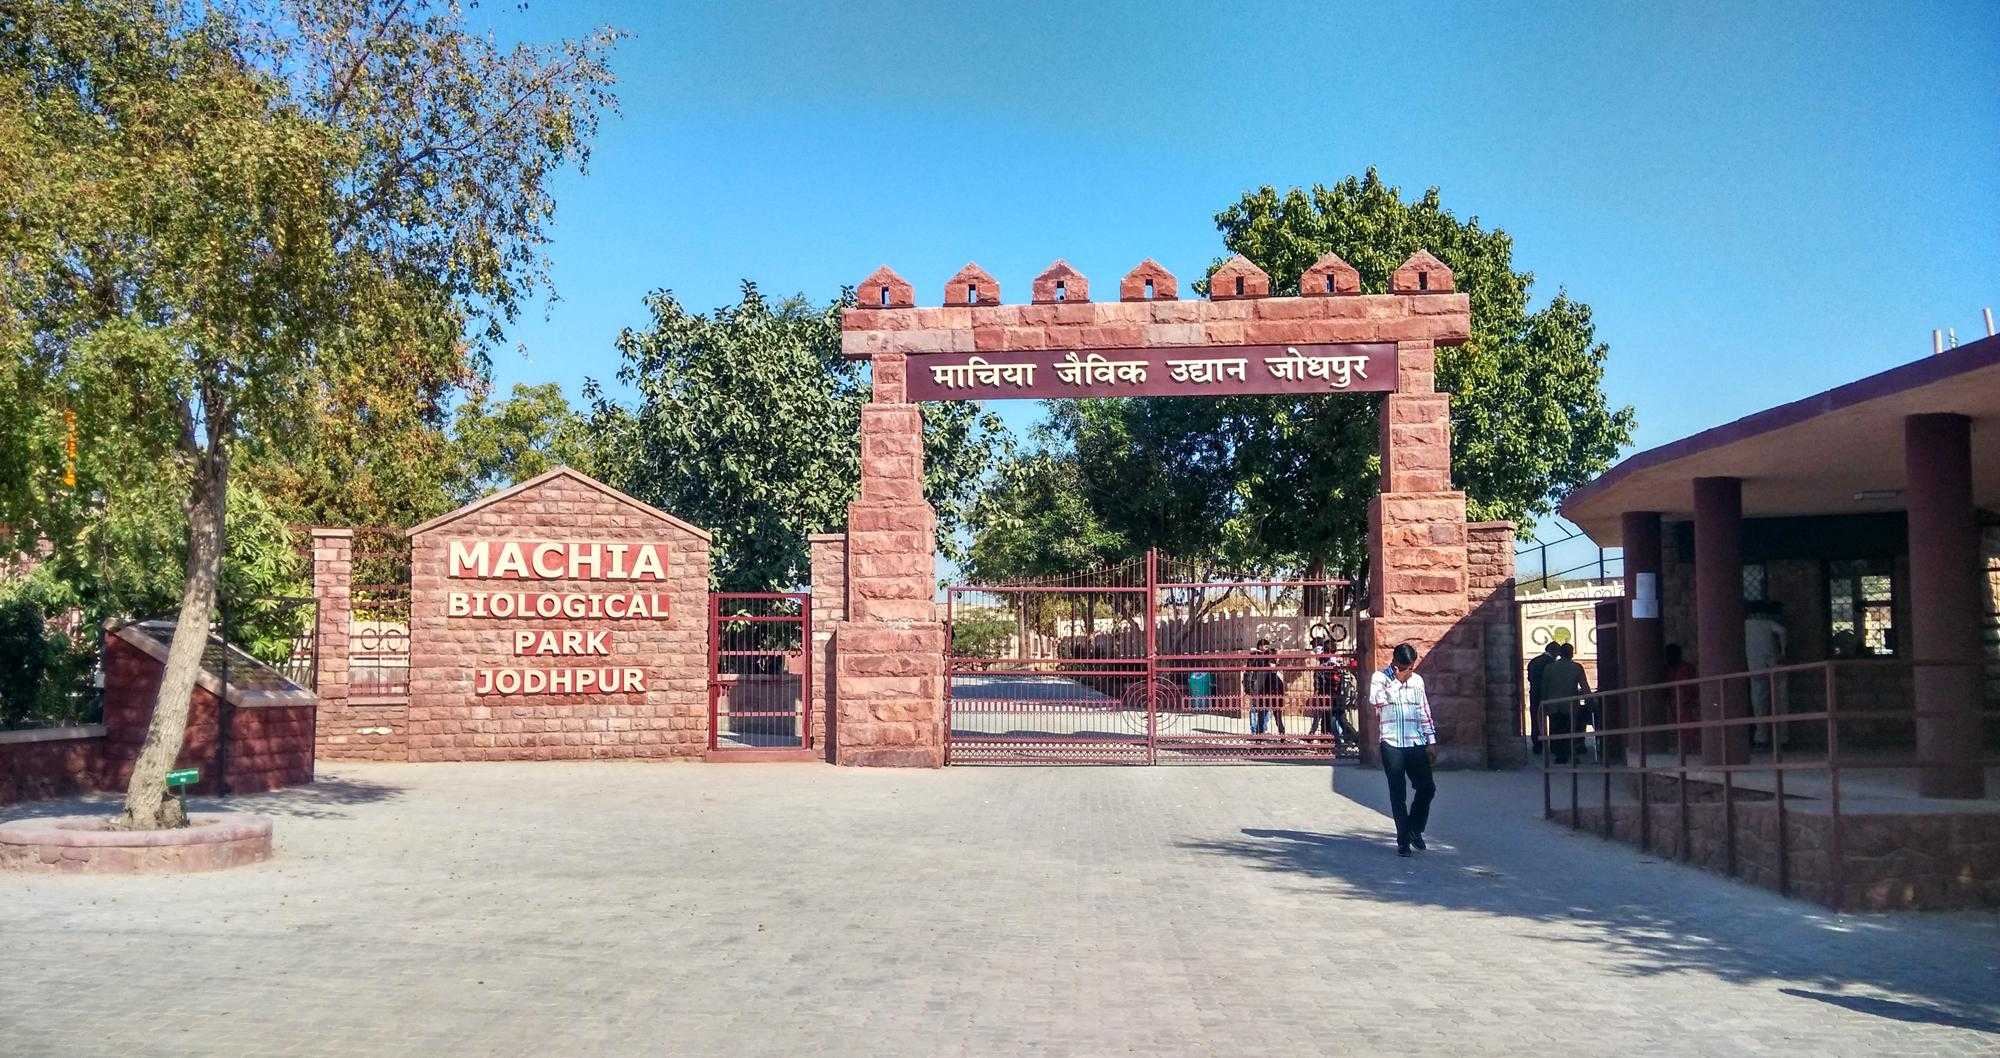 Machia Biological Park Jodhpur Photo 1